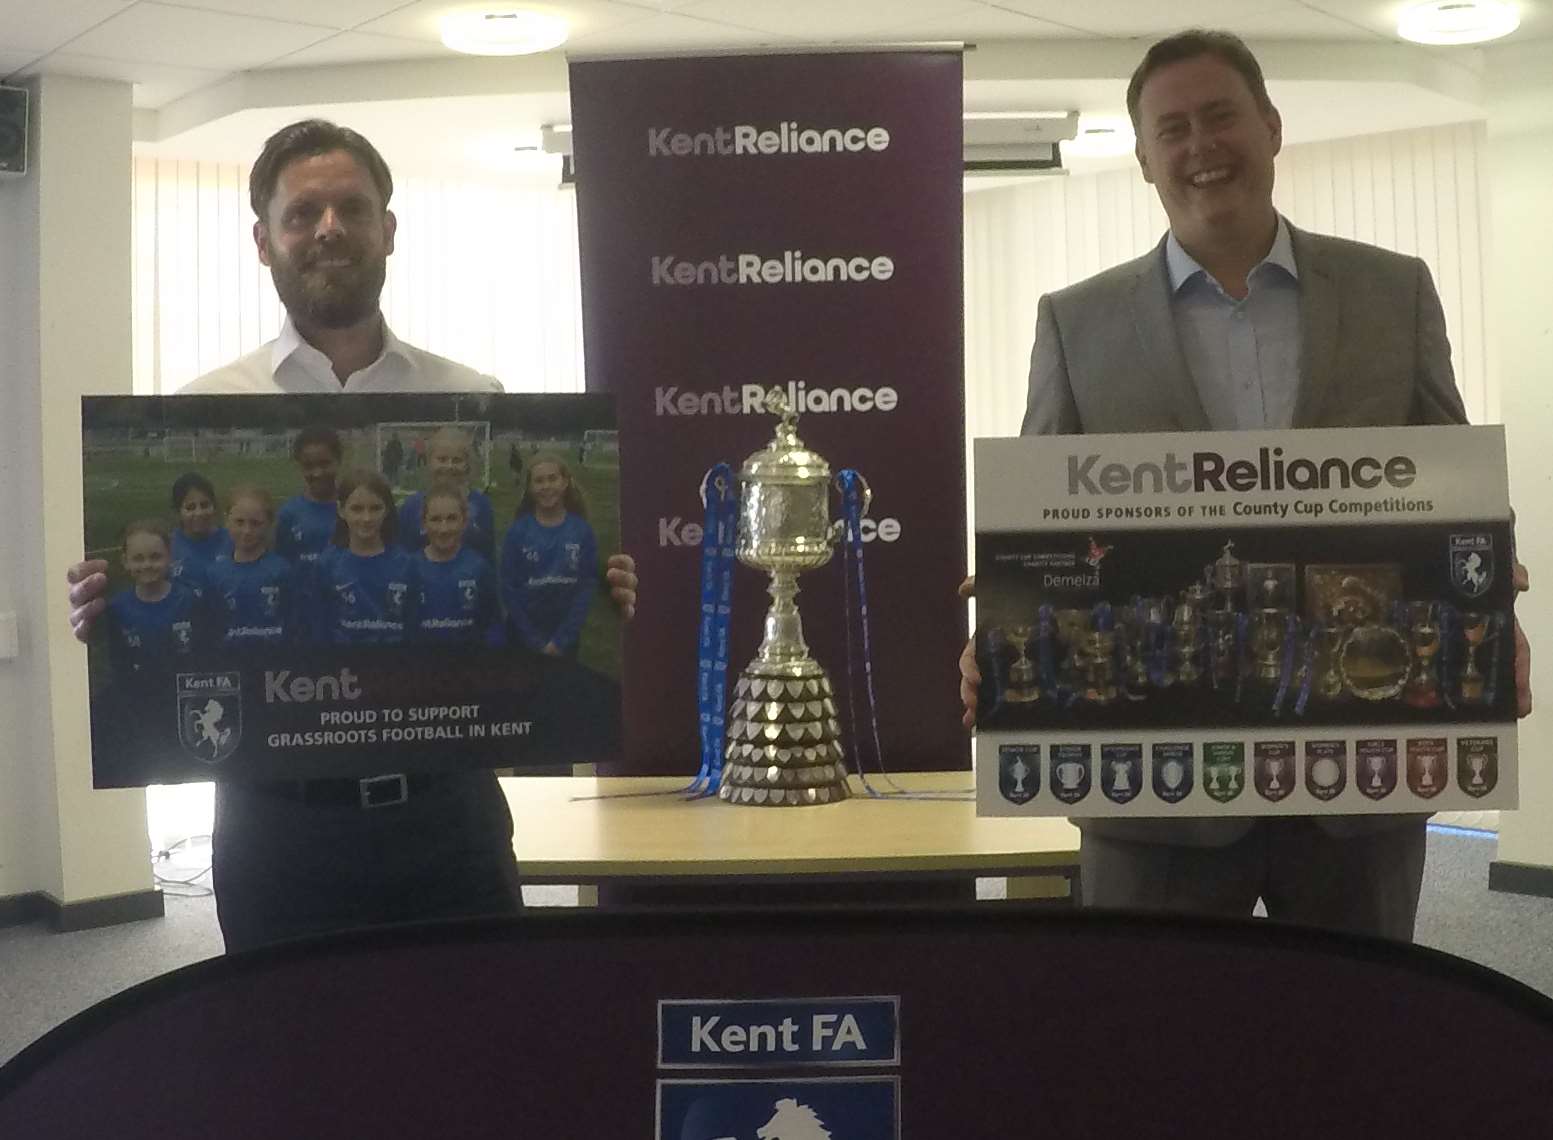 Kent FA's Paul Dolan with Robert Gurr, of Kent Reliance